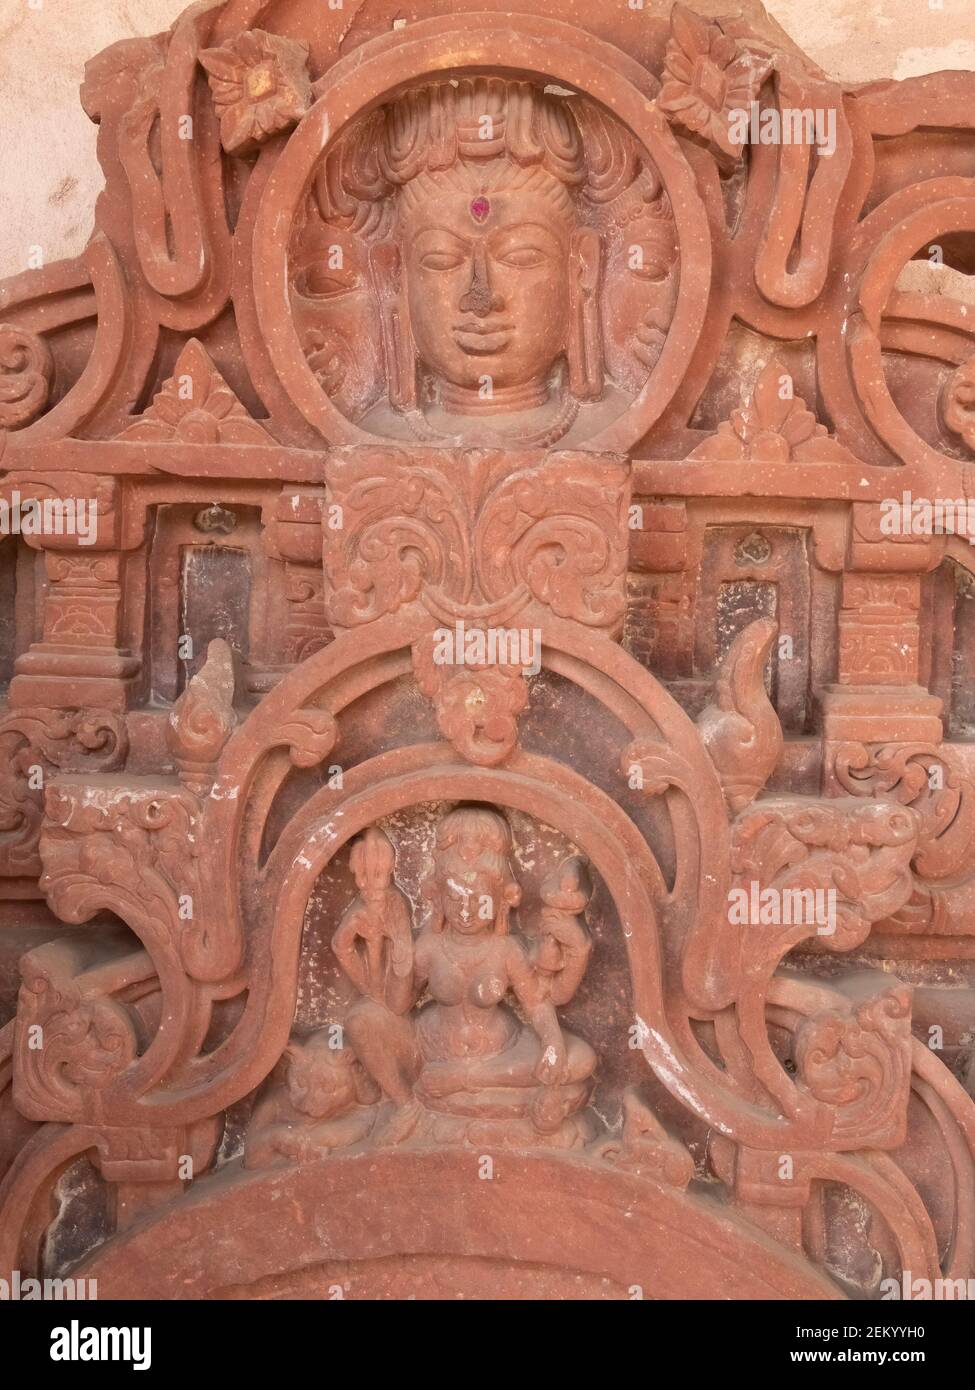 Ein Flachrelief Schnitzwerk von hinduistischen Feinheiten bei harschat mata Tempel im Dorf abhaneri in der indischen Bundesstaat rajasthan Stockfoto